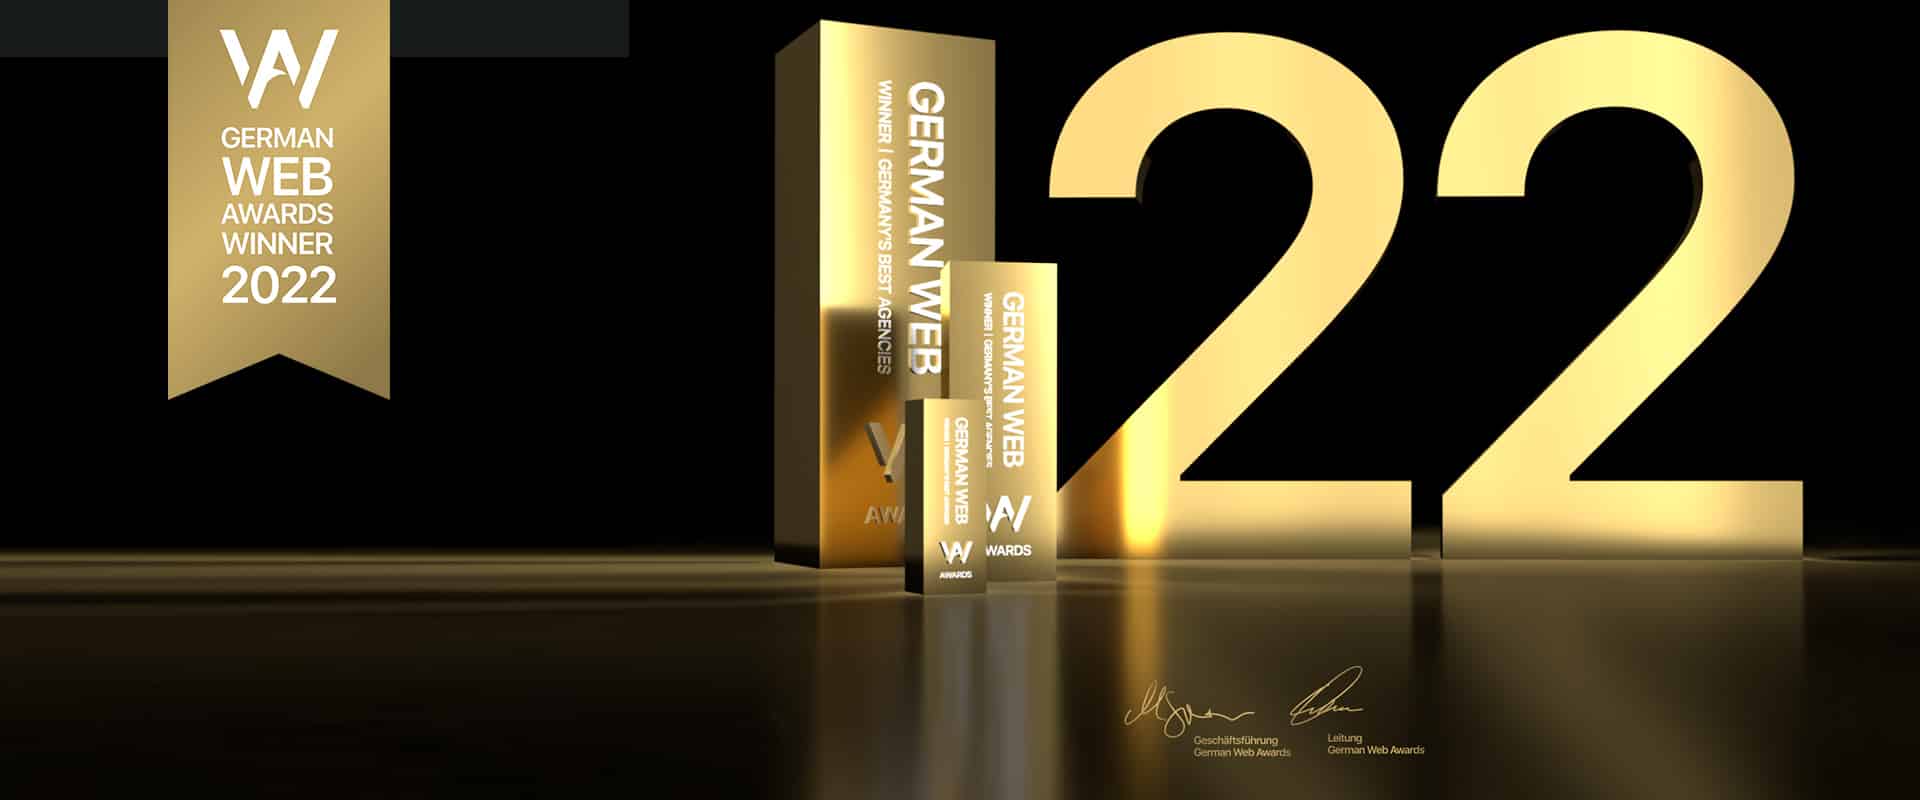 German Web Award Gewinner 2022 – Digitalagentur pechschwarz®